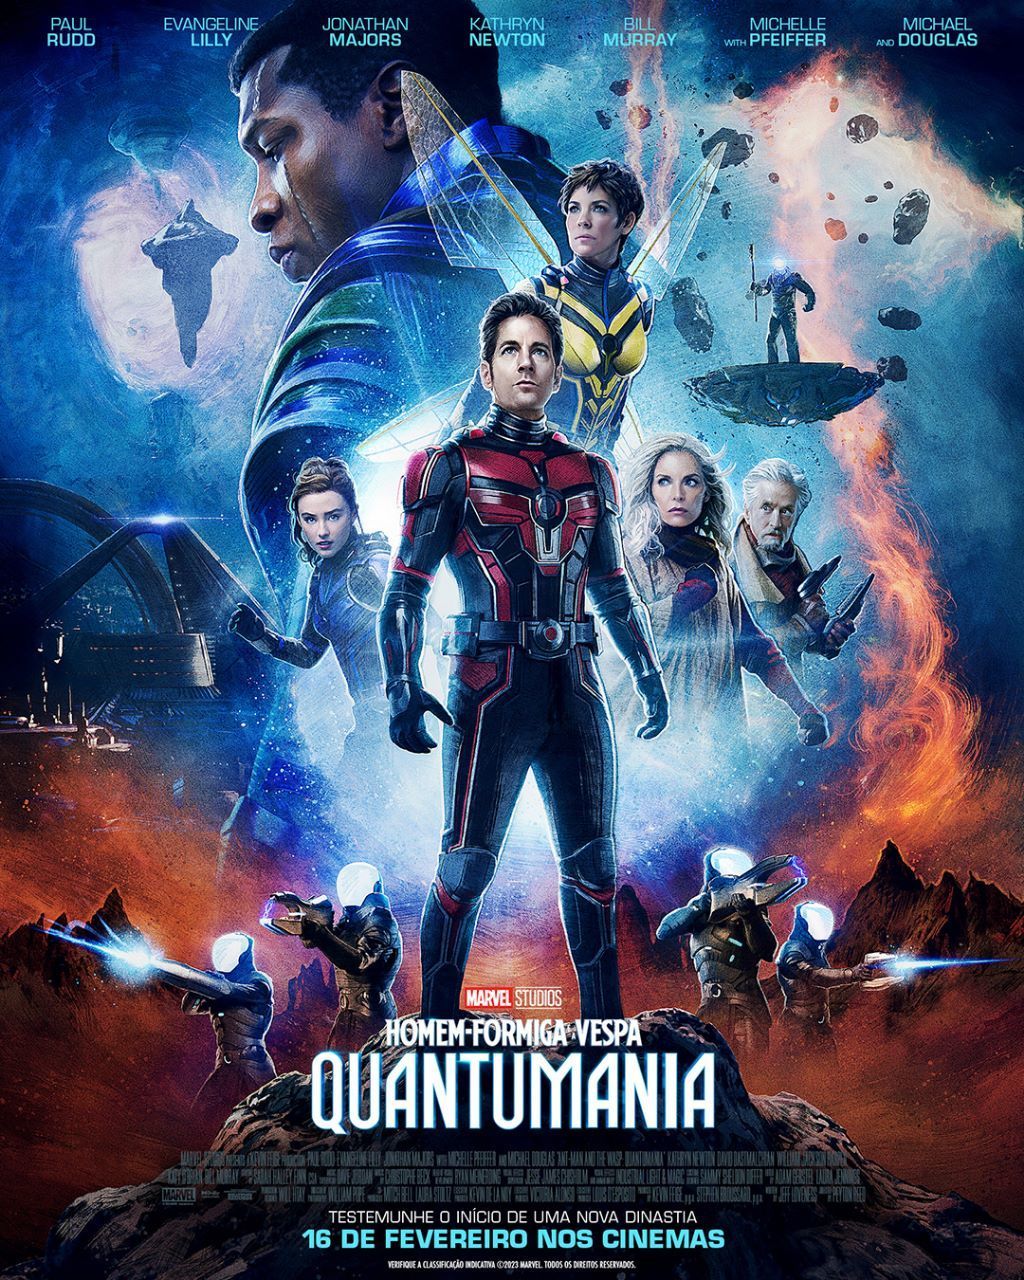 Quando “Homem-Formiga e a Vespa: Quantumania” chegará ao Disney+?